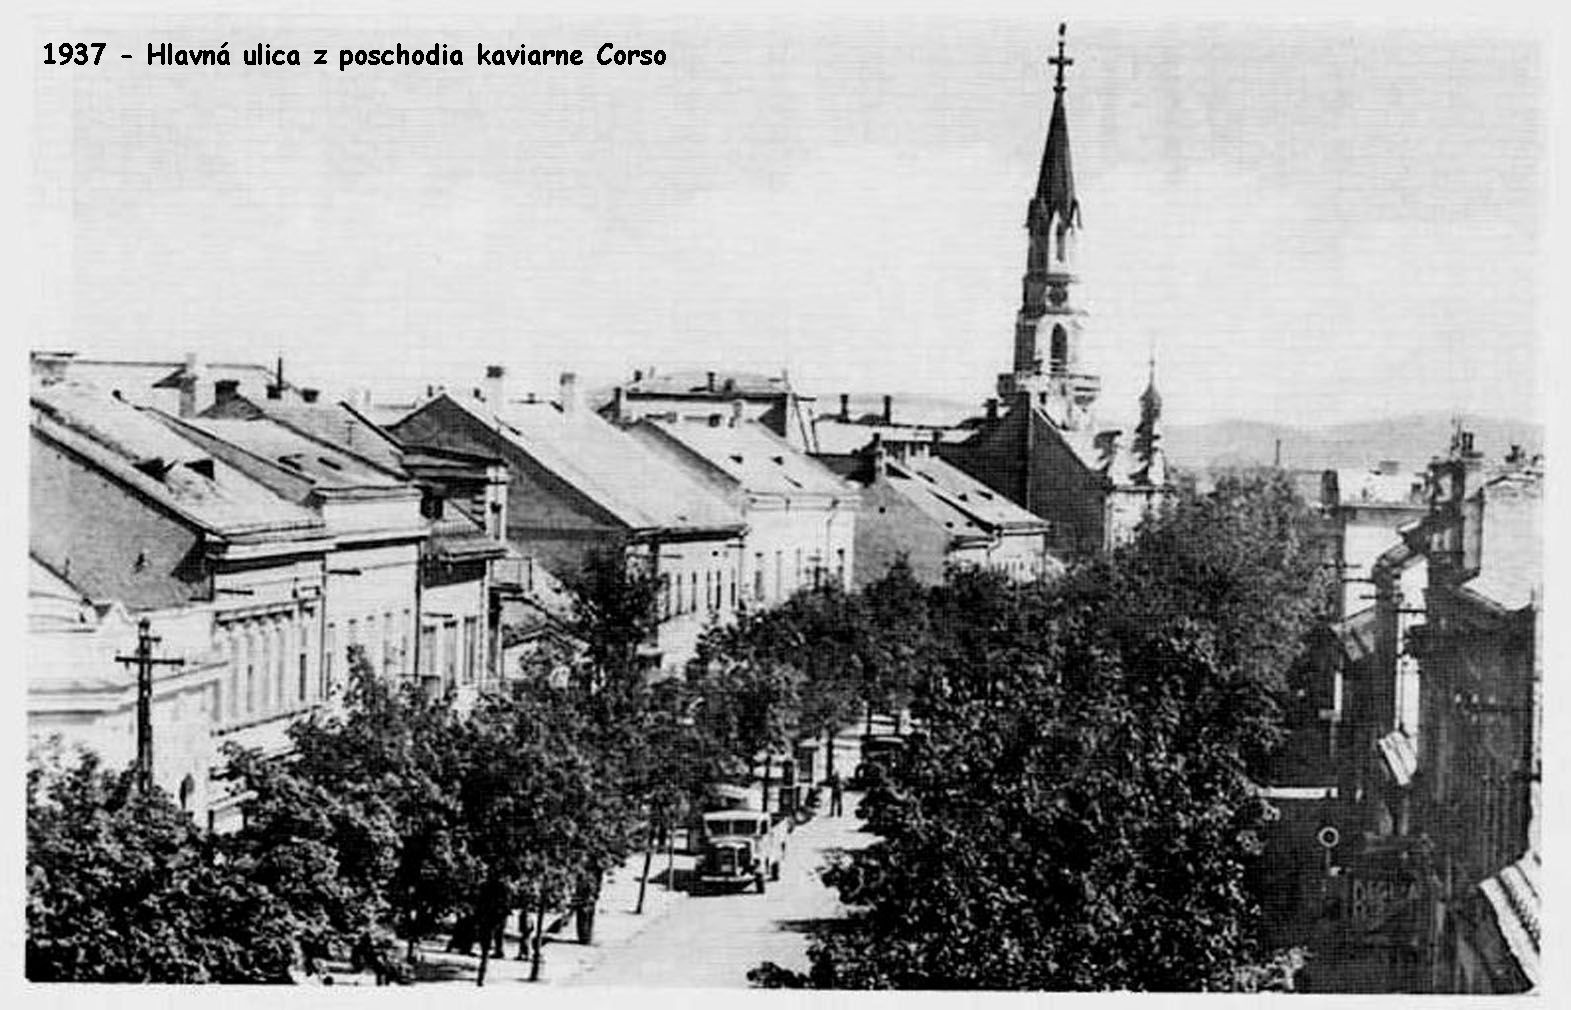 1937 - Pohľad na Masarykovu ulicu z poschodia kaviarne Corso